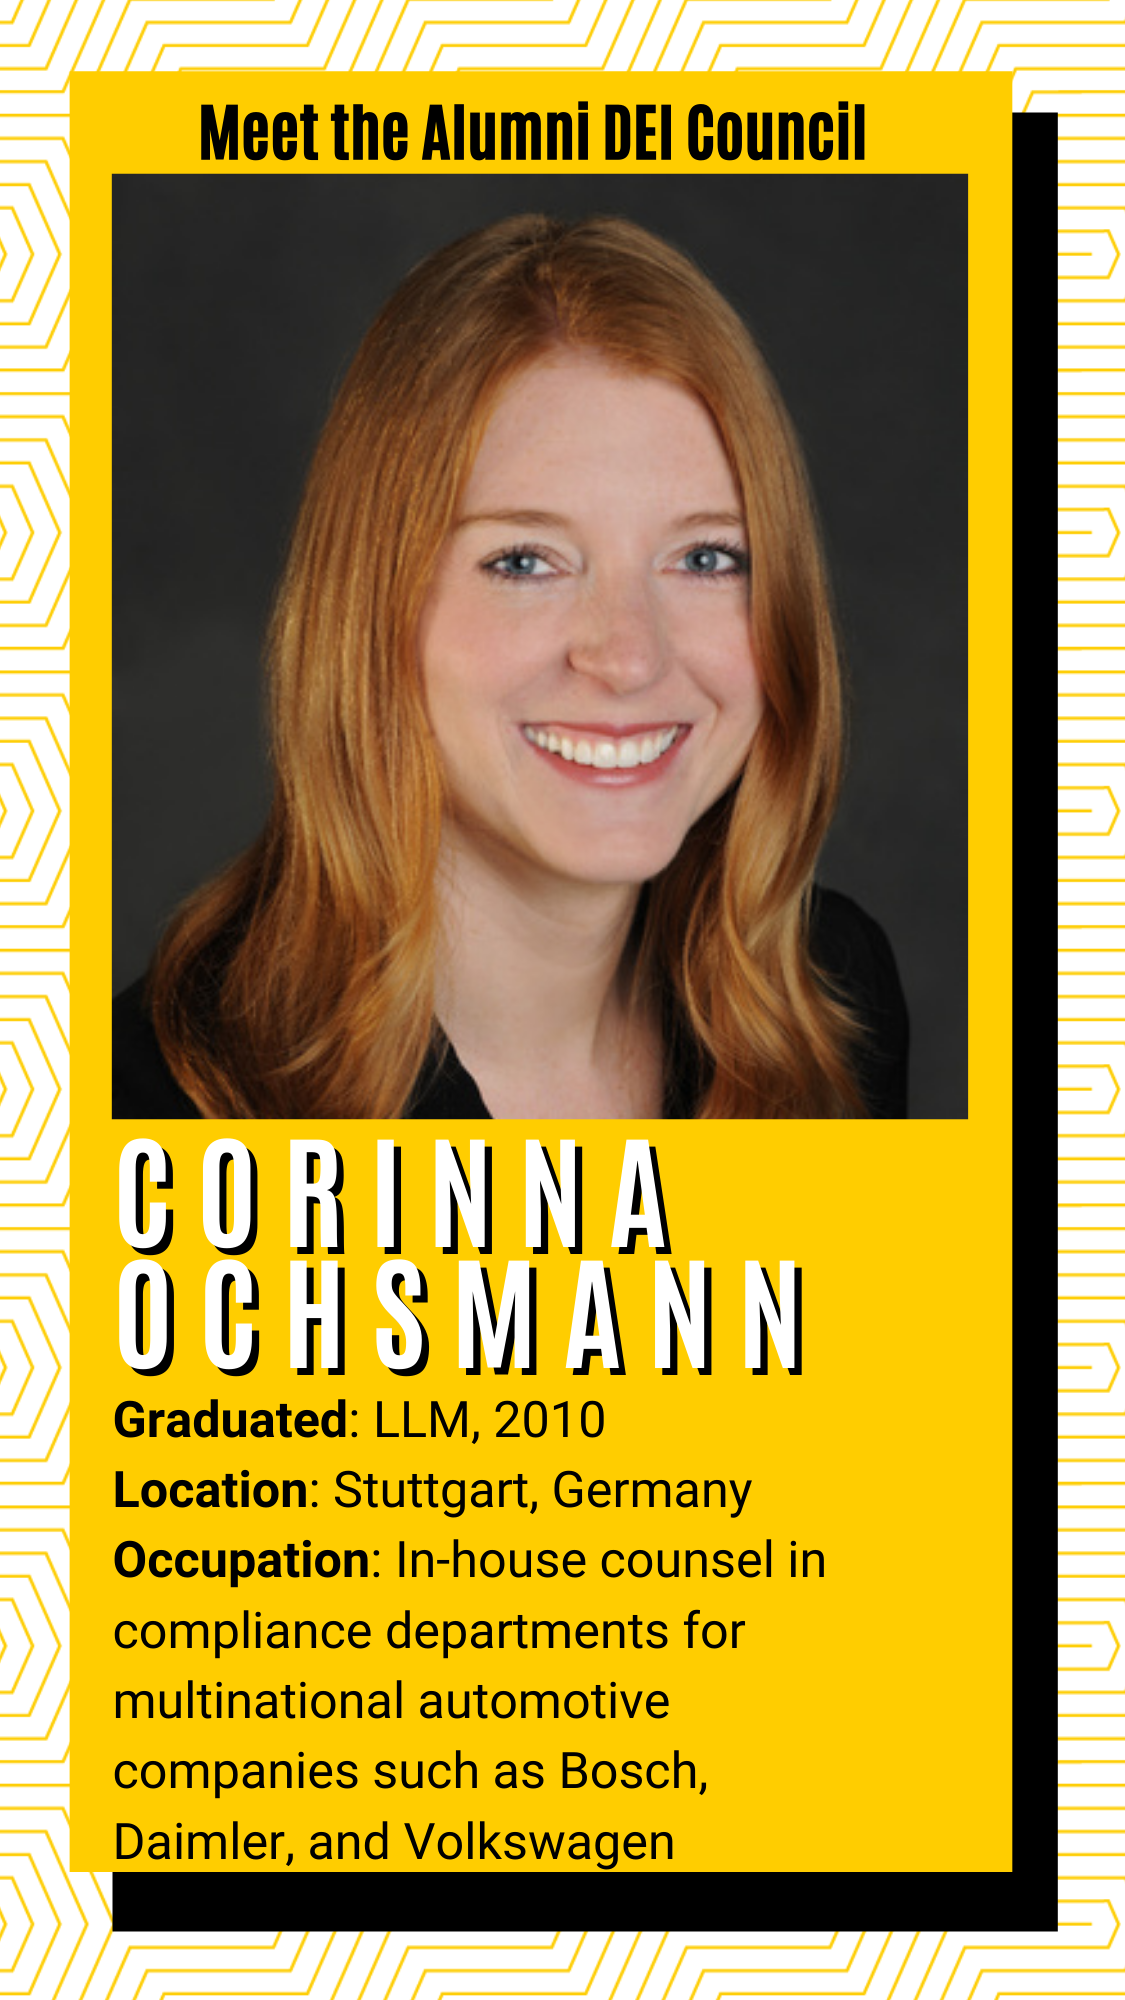 Meet the alumni DEI Council - Corinna Ochsmann